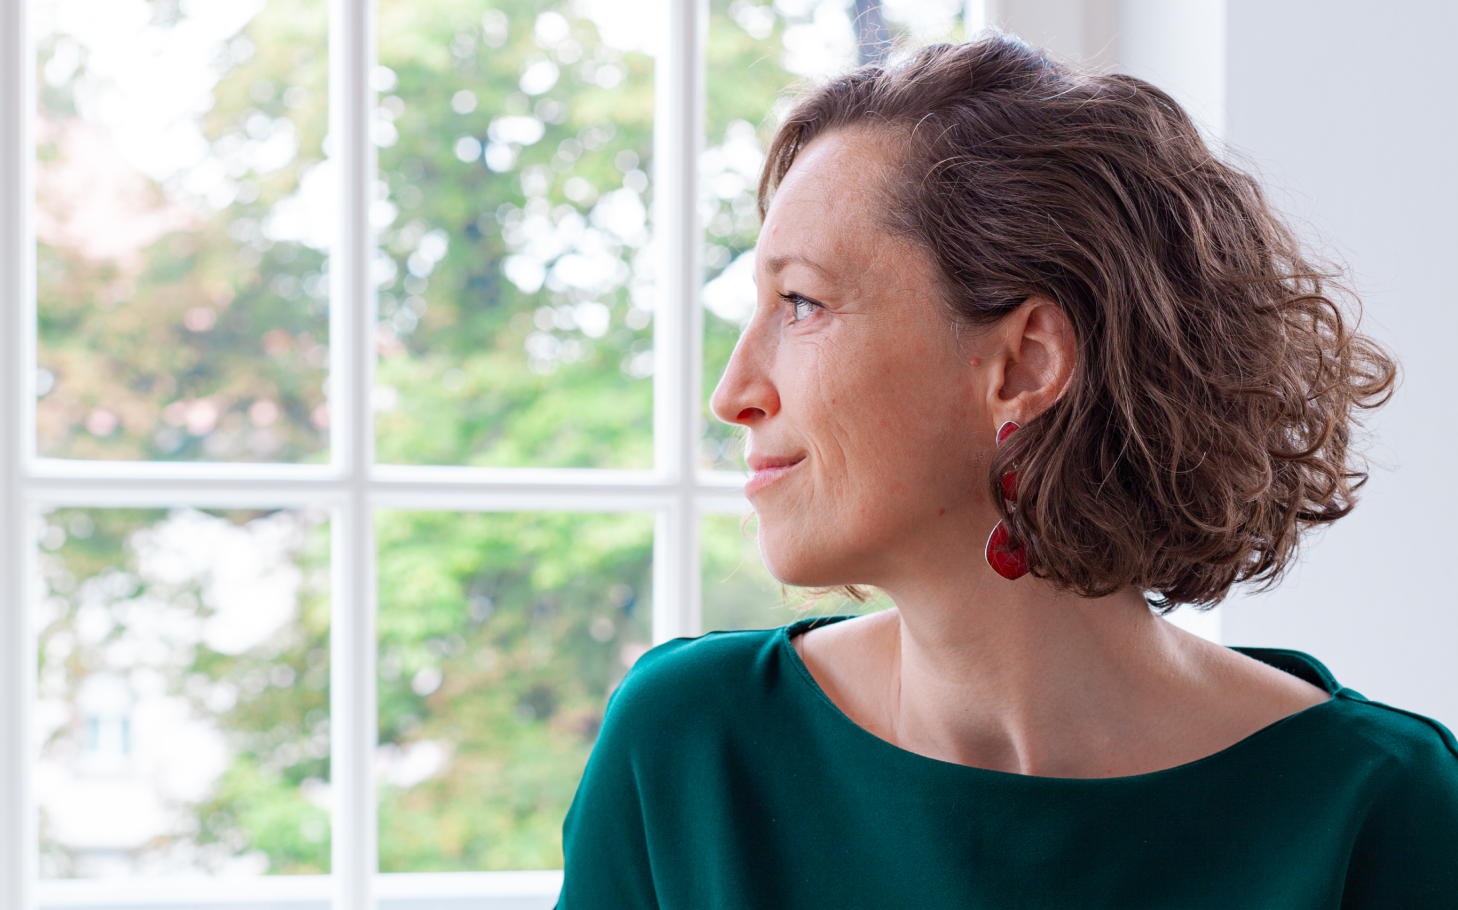 Sonja Mewes Profilbild, aus dem Fenster schauend für Weitblick